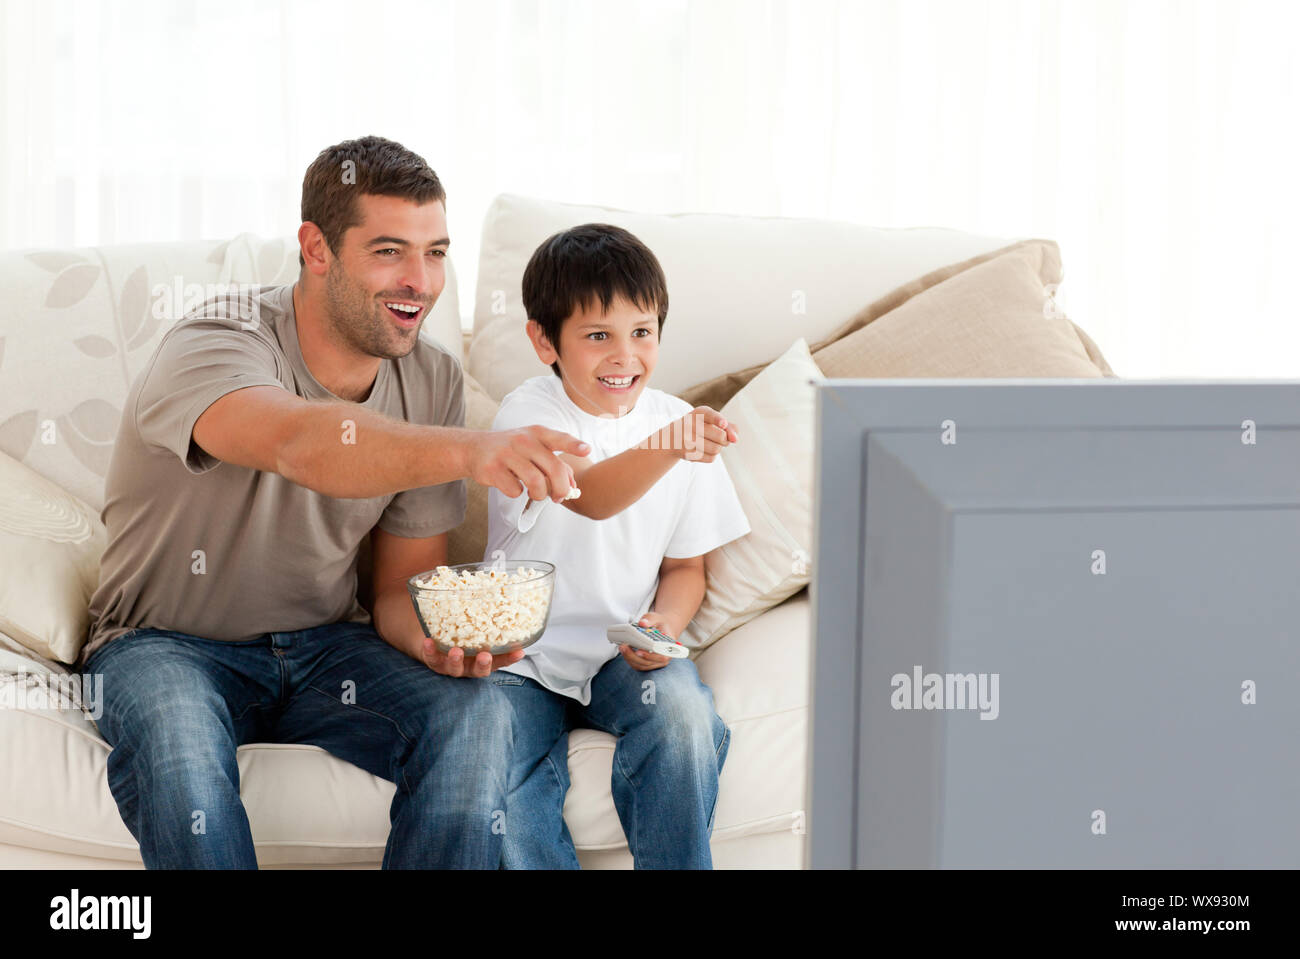 Папа попробуйте с мамой по новой. Папа телевизор. Дети и папа у телевизора. Отец перед телевизором. Отец с сыном у телевизора.